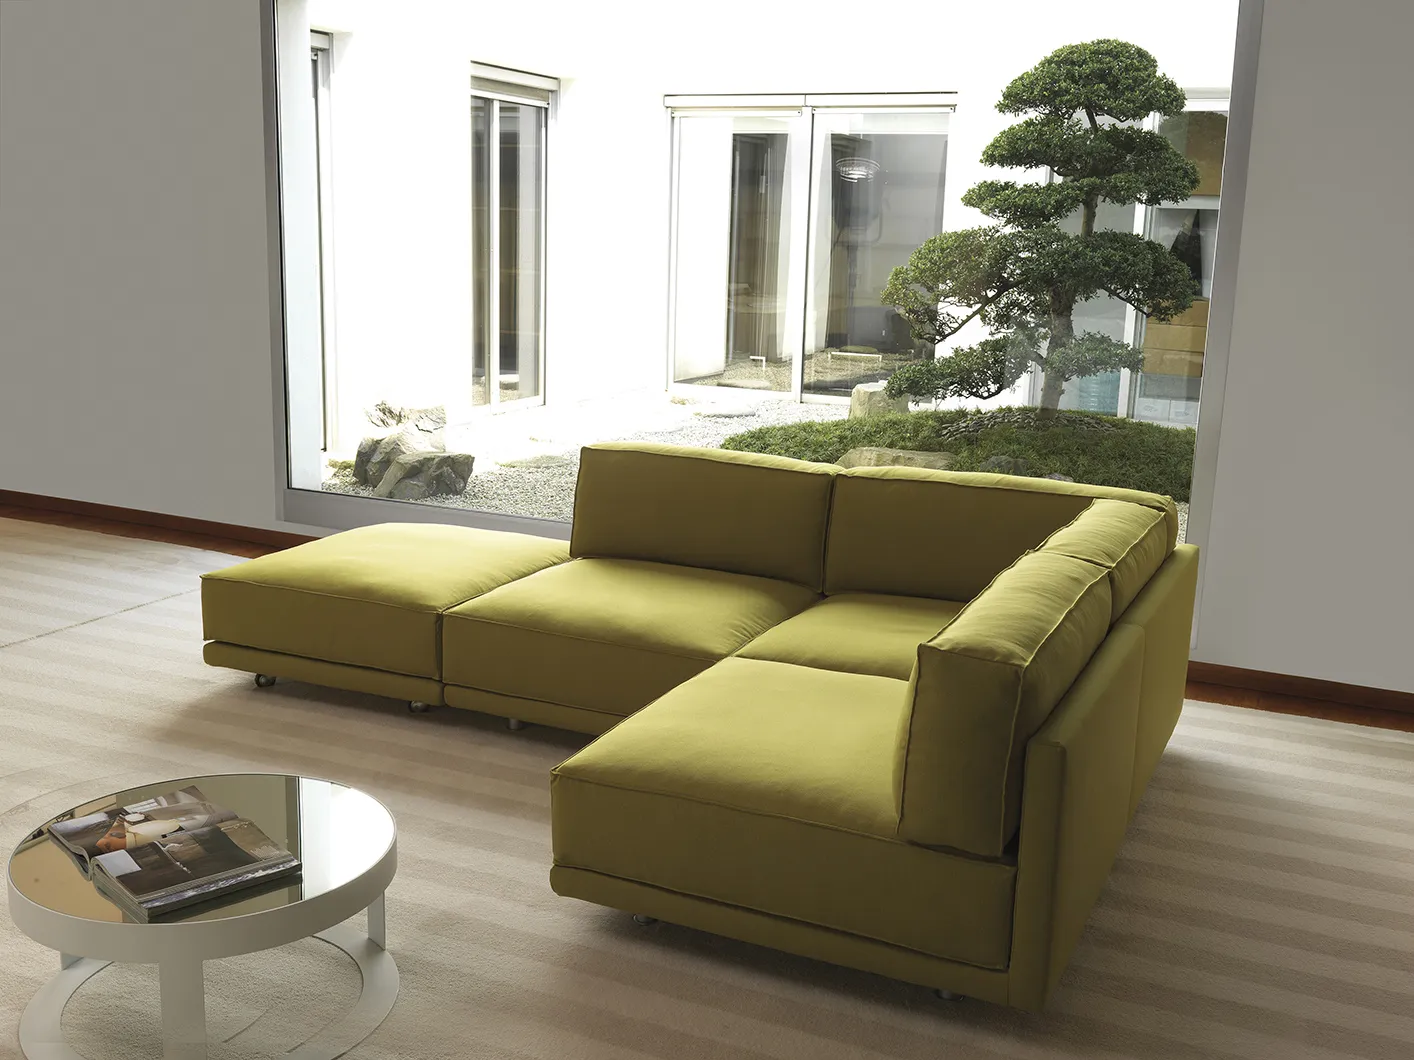 Milano Bedding - divano e divano letto componibile DENNIS